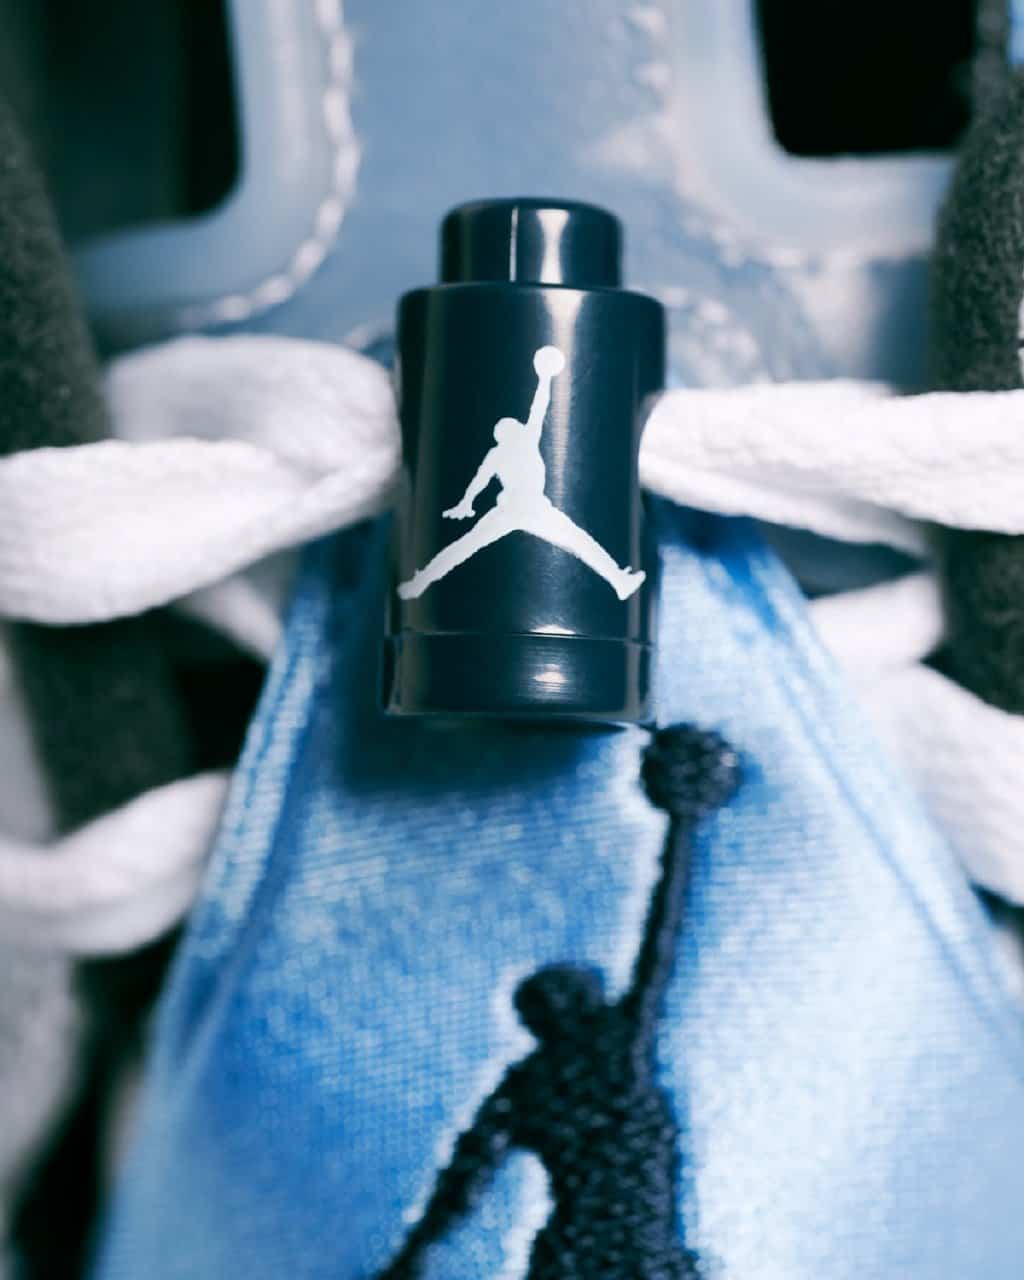 Nike Air Jordan 6 AJ6 大学蓝北卡蓝复古篮球鞋正品实拍 对比细节图_1